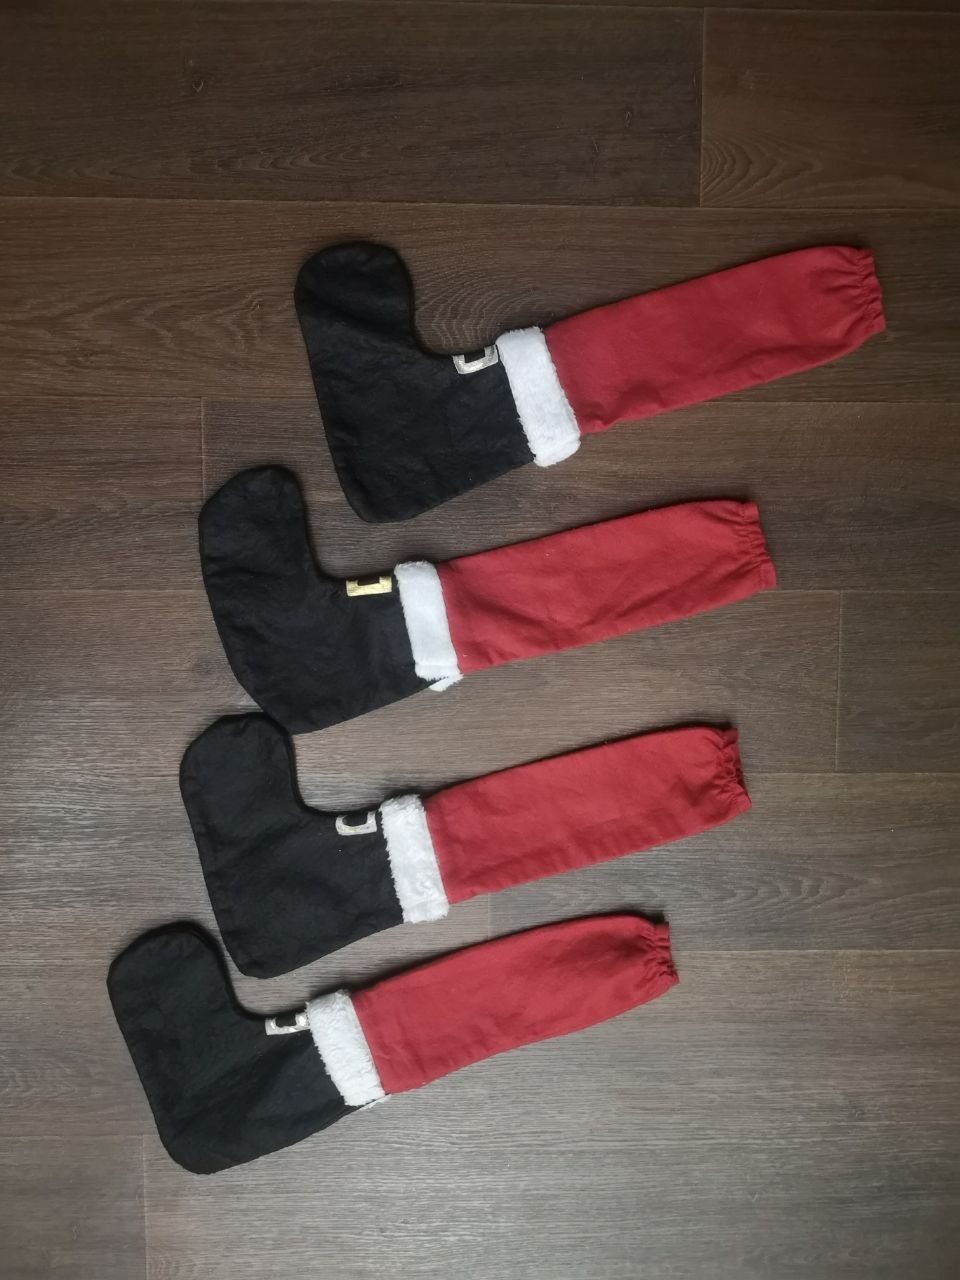 Новогодние носки сапожки для подарков новый год Рождество санта Клаус